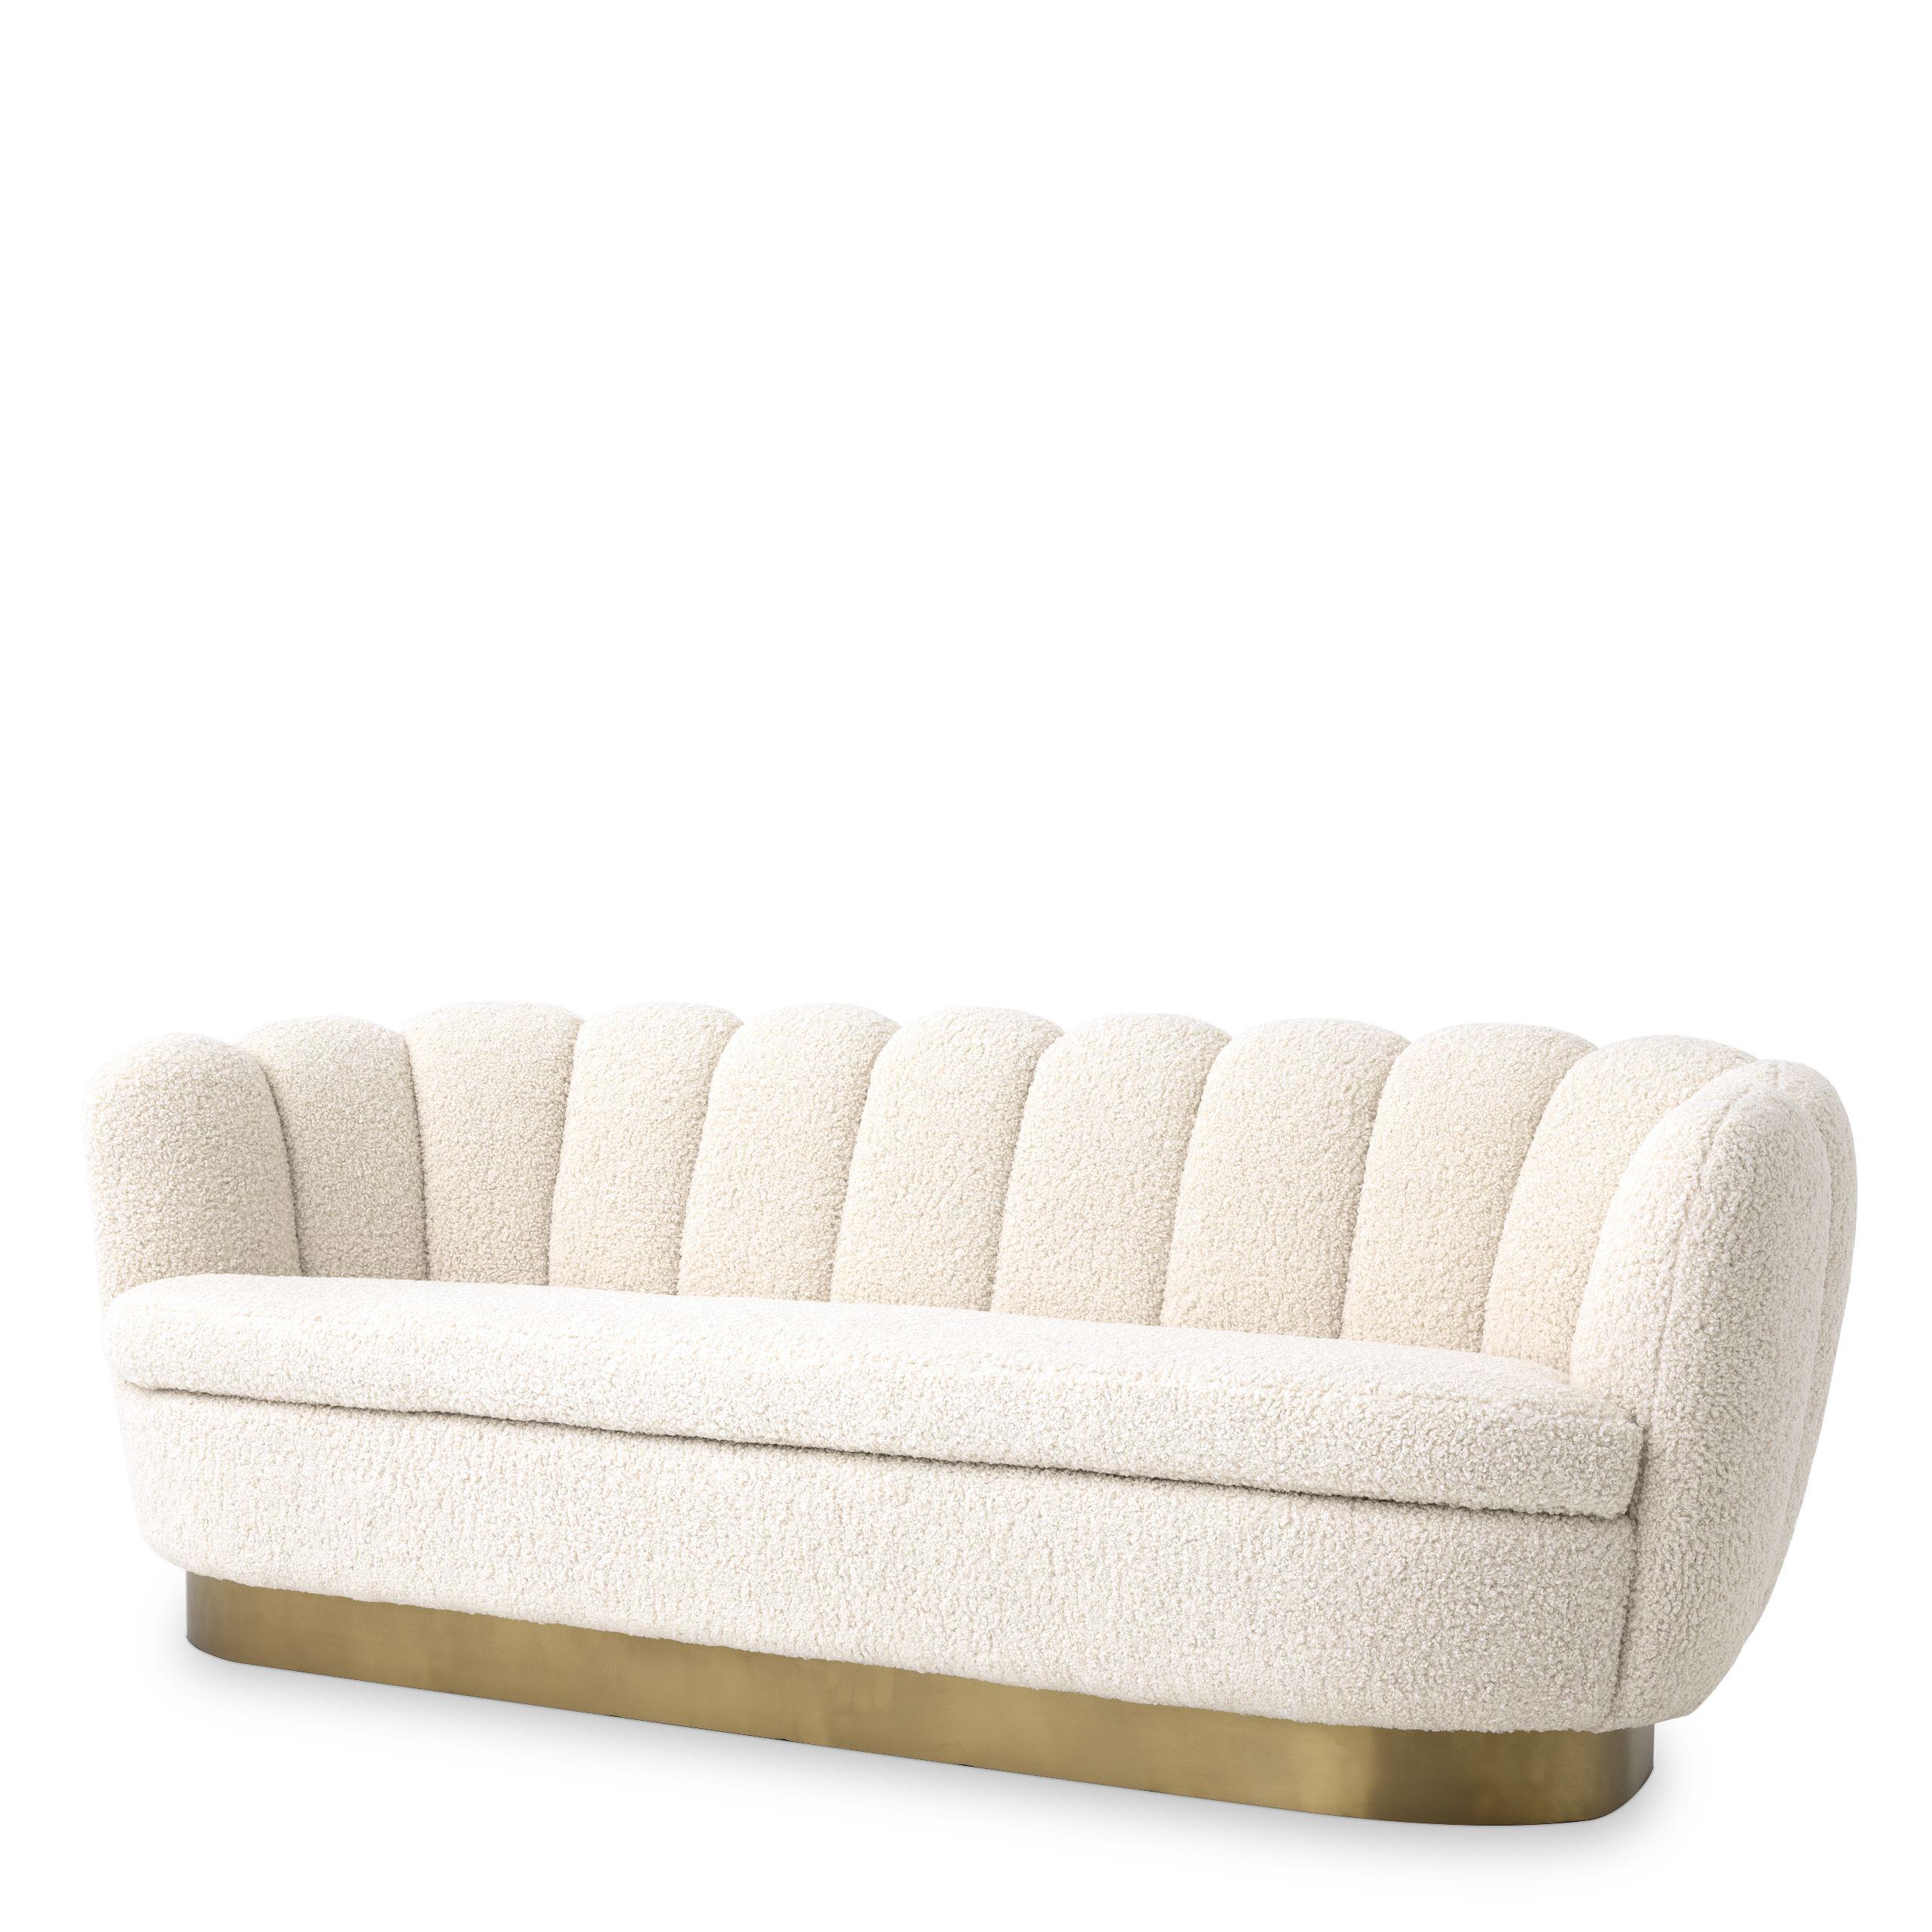 Купить Прямой диван Sofa Mirage в интернет-магазине roooms.ru